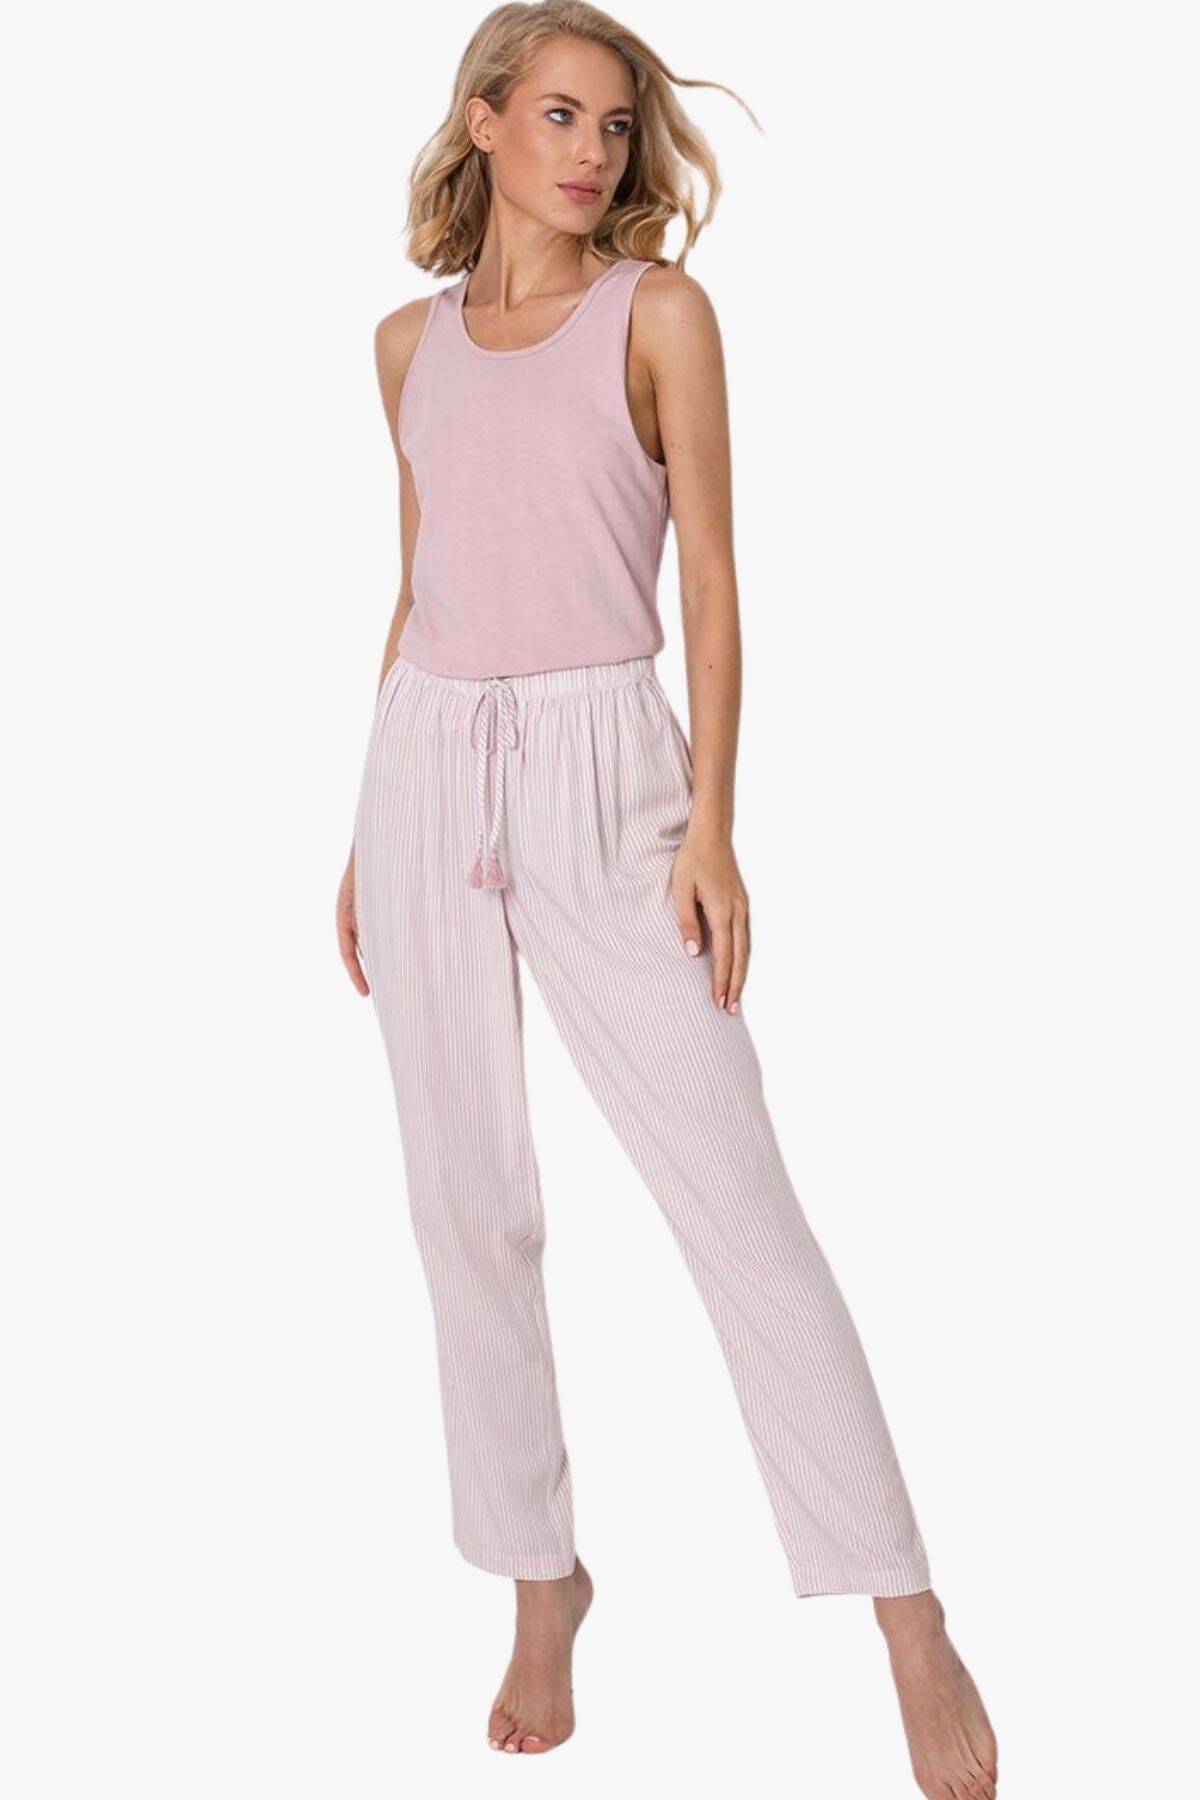 Пижама женская с брюками ARUELLE Vanessa pajama long, розовый вид 0